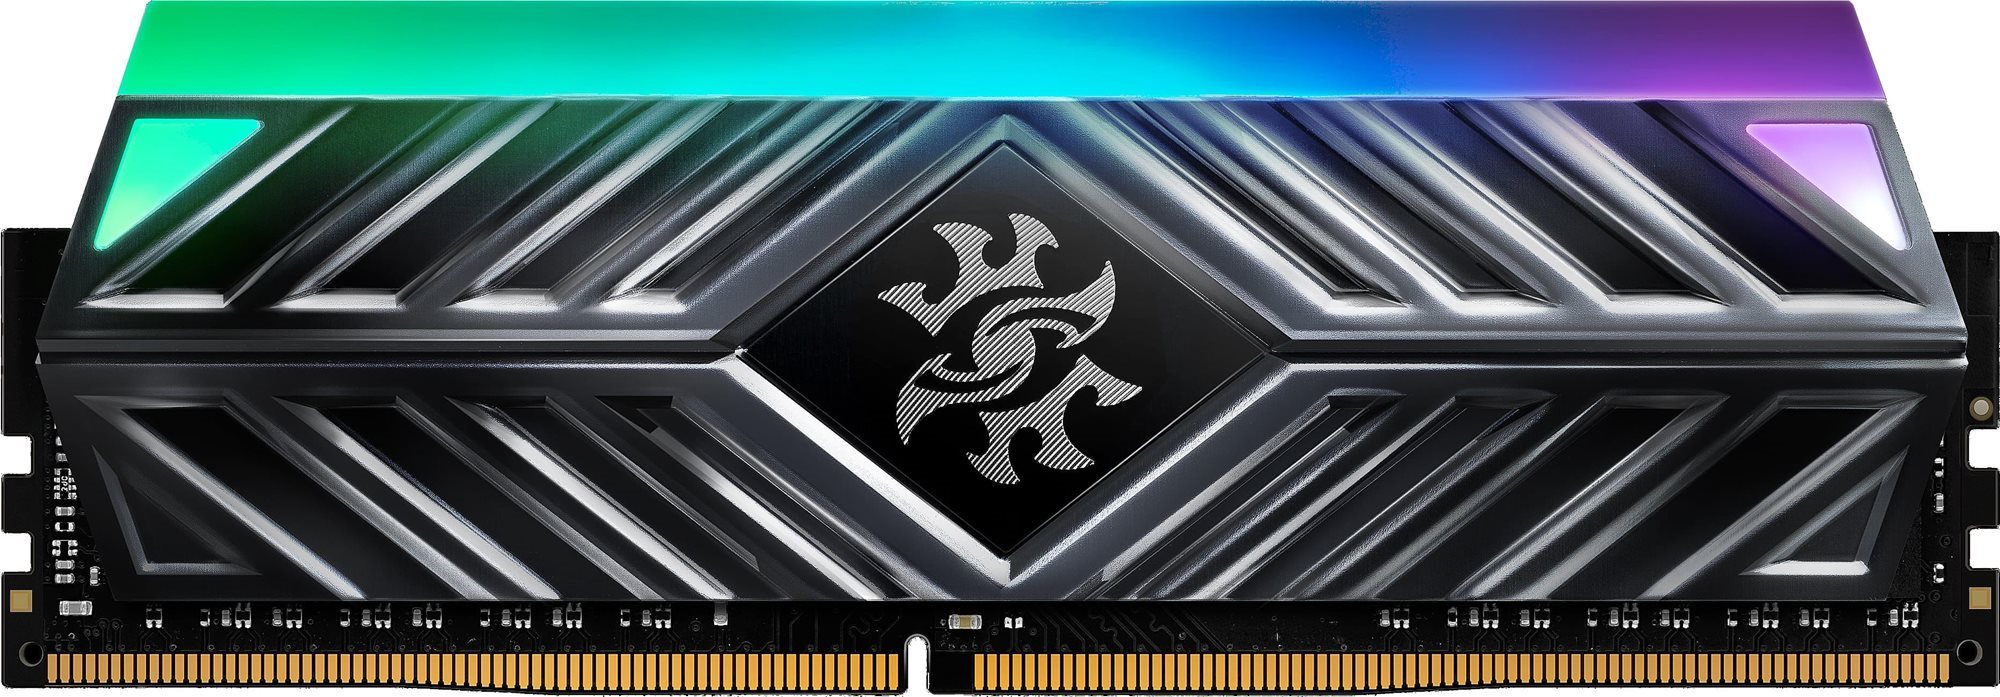 RAM memória ADATA XPG D41 8GB DDR4 3200MHz CL16 RGB Black